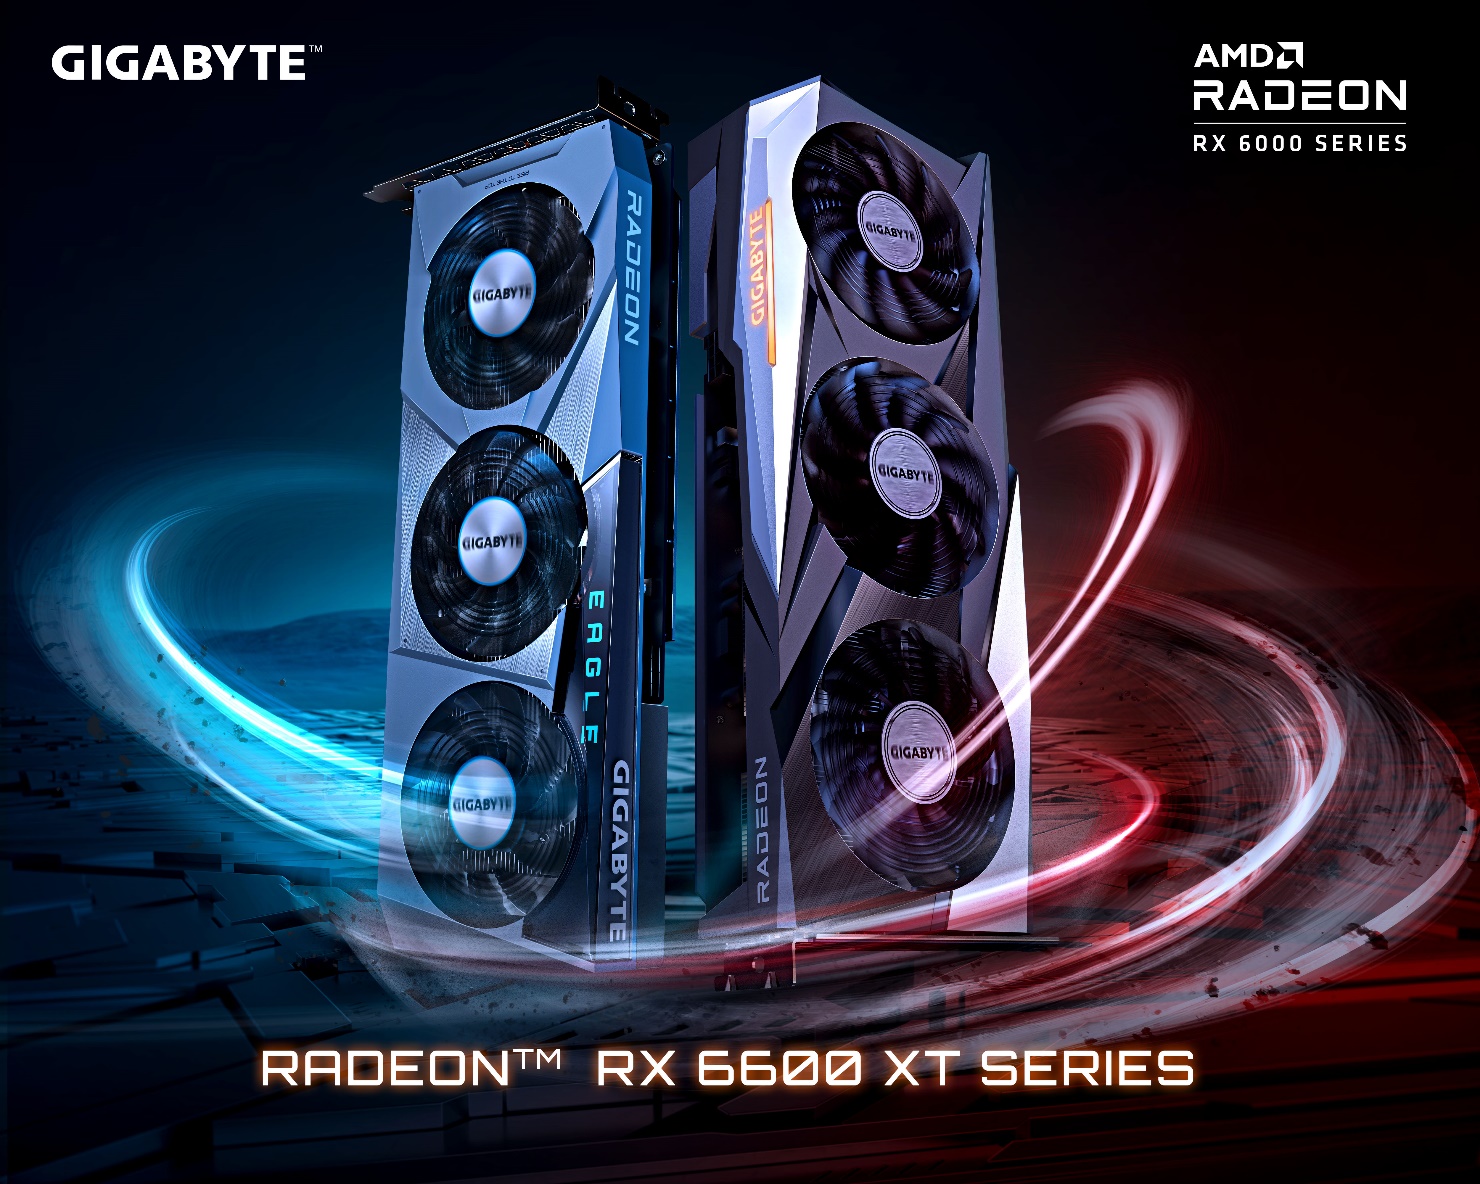 GIGABYTE ra mắt card đồ họa AMD Radeon RX 6600 XT, sẵn sàng mang lại hiệu suất chơi game 1080p kinh ngạc